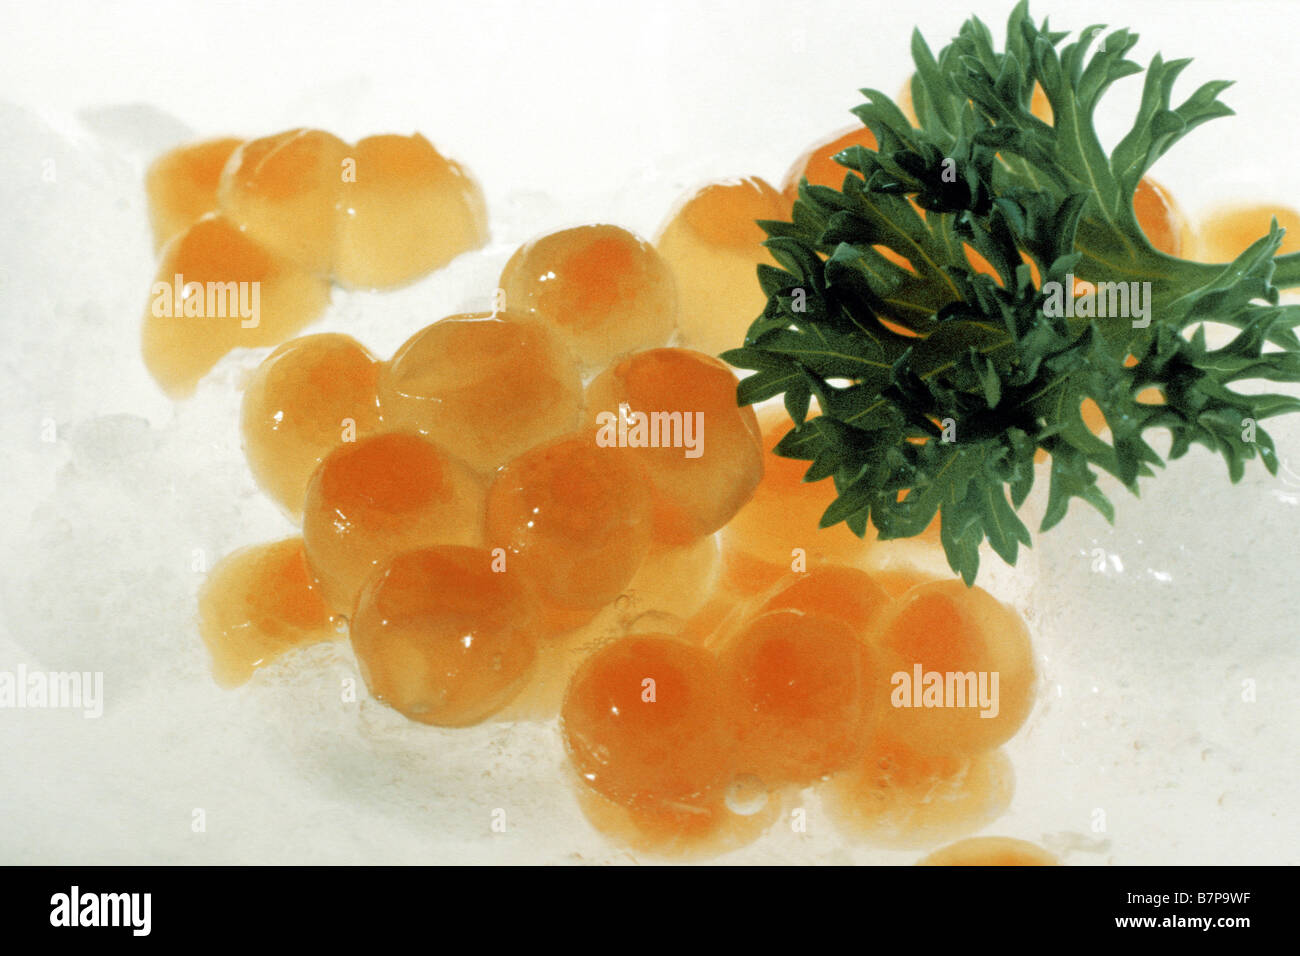 Caviar rouge, les œufs de saumon kéta (Oncorhynchus keta) Banque D'Images